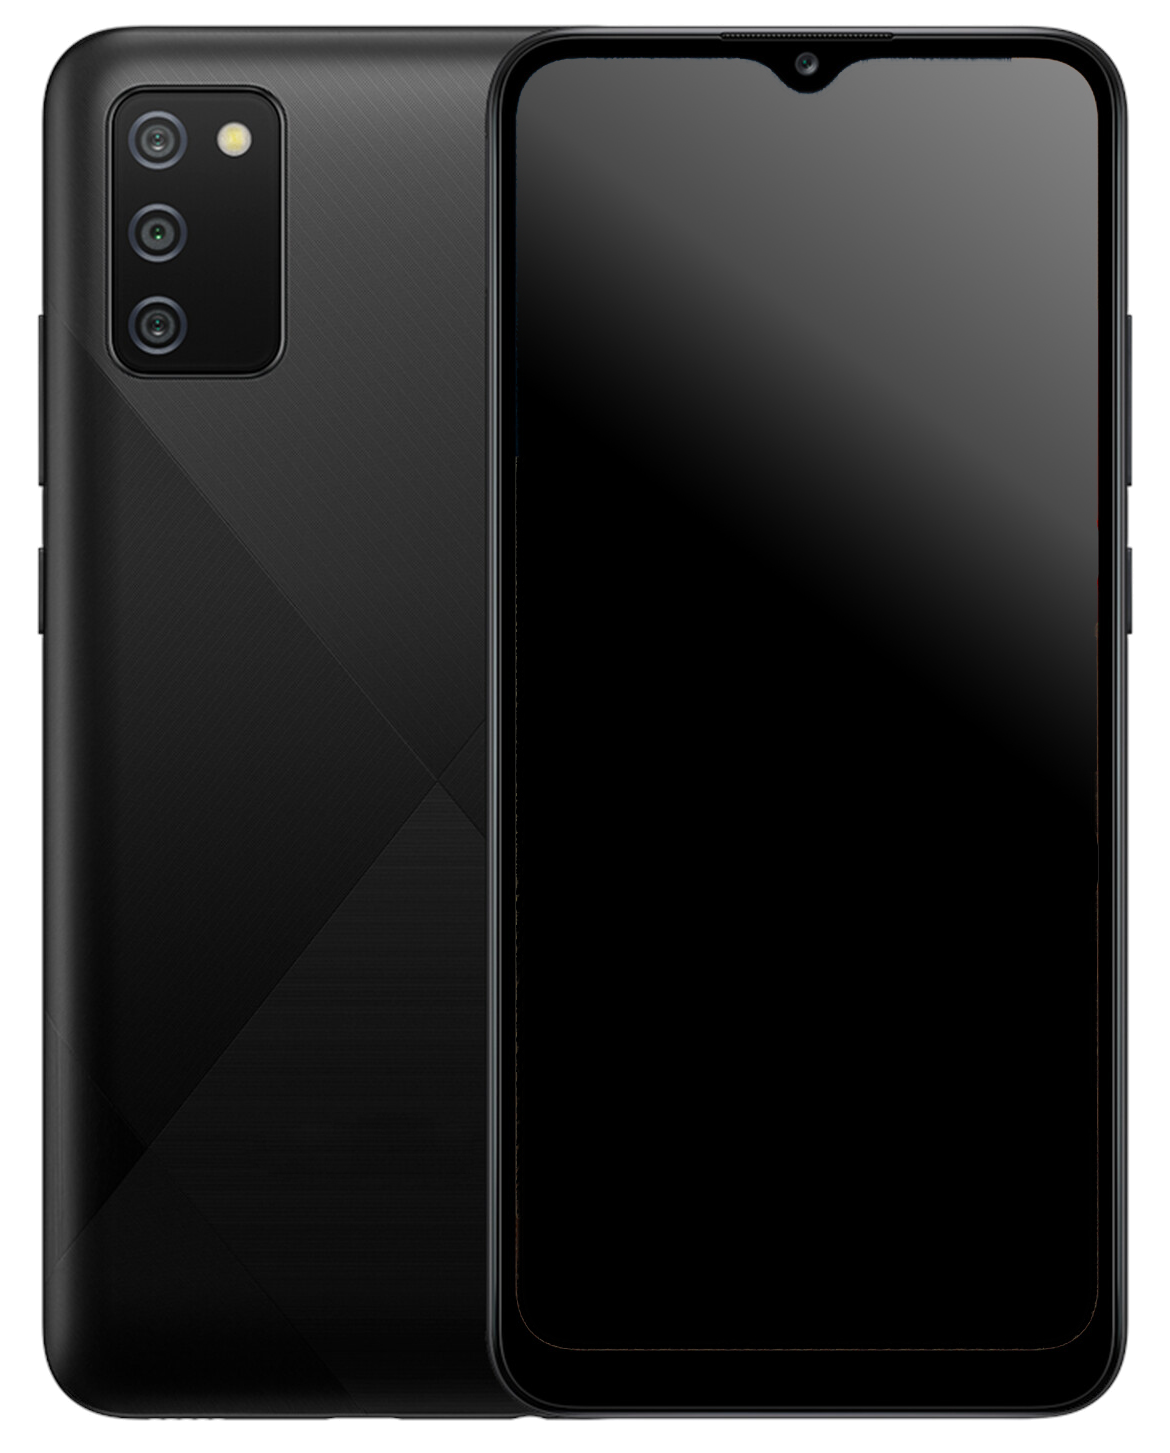 Samsung Galaxy A02s Dual-SIM schwarz - Onhe Vertrag